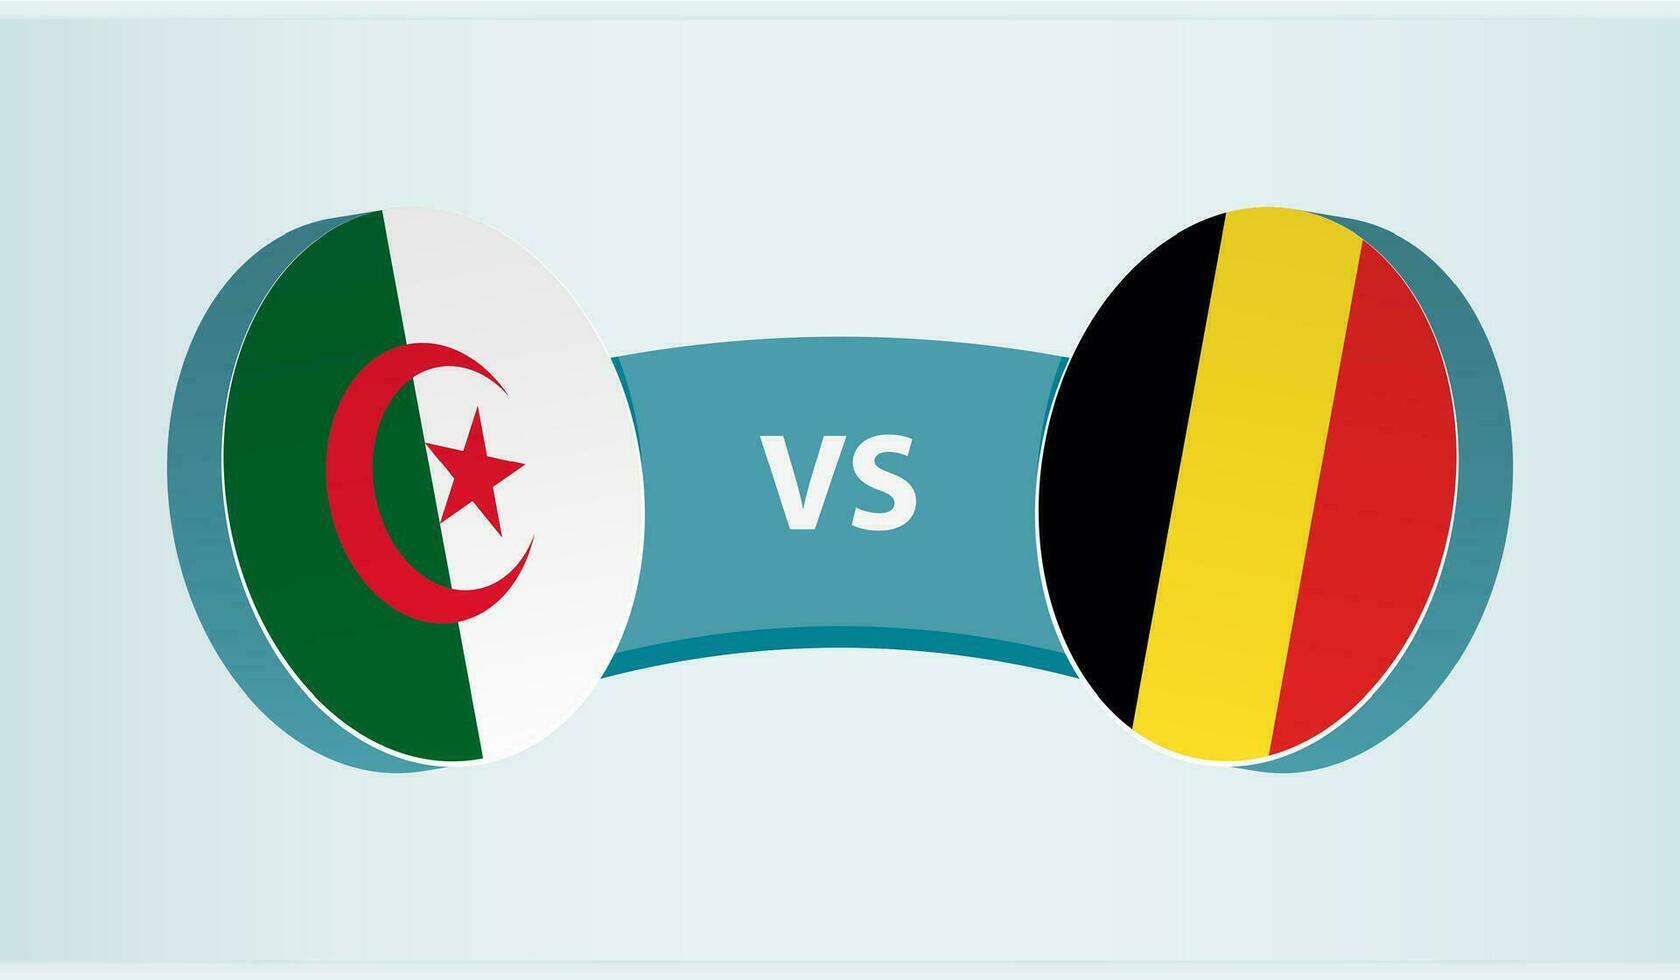 algeriet mot Belgien, team sporter konkurrens begrepp. vektor